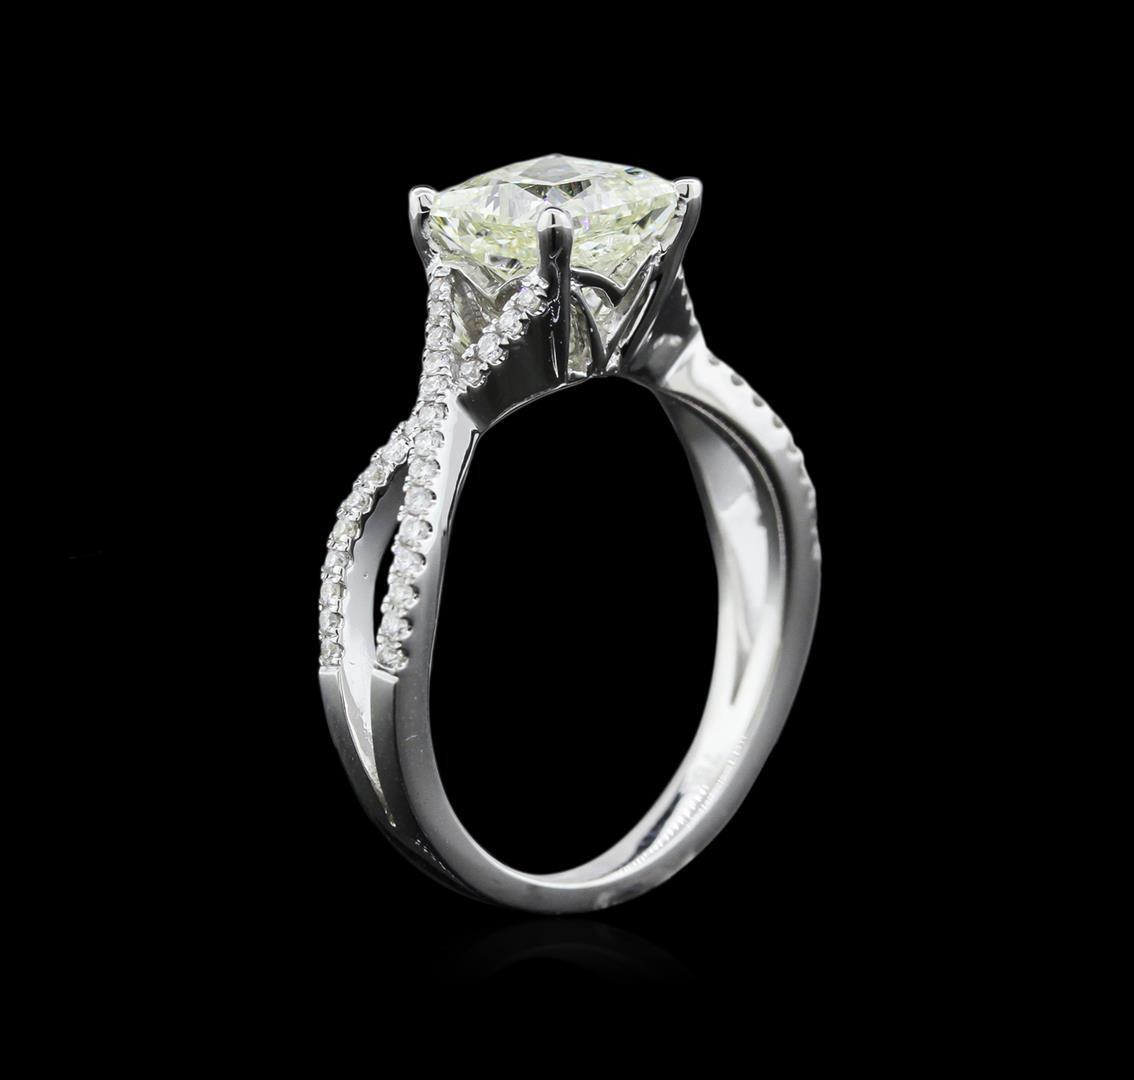 1.98 ctw Diamond Ring - 18KT White Gold